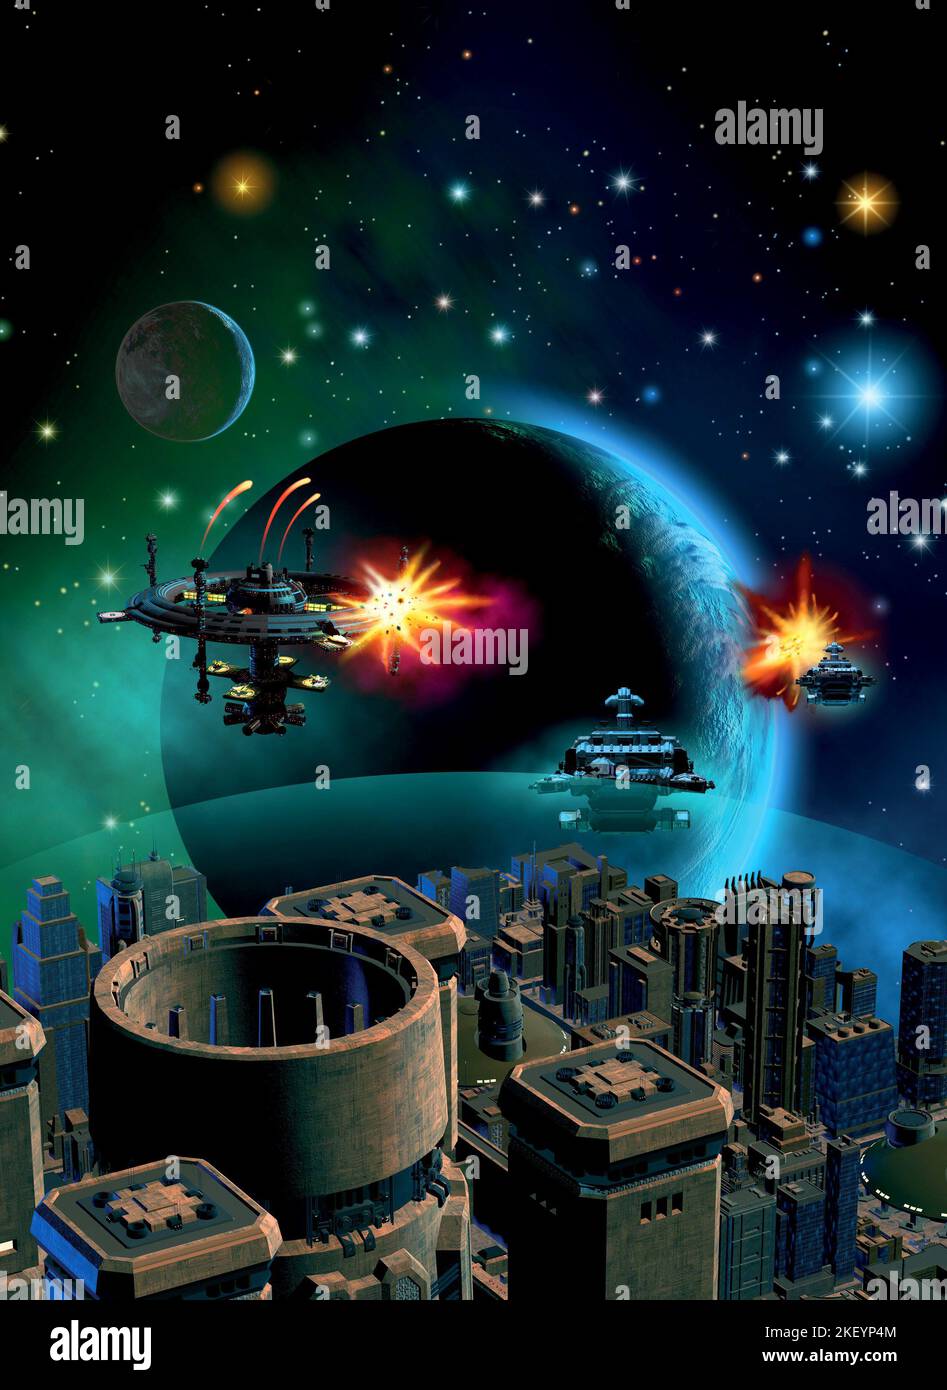 batalla espacial alrededor de un planeta alienígena, estación espacial, ilustración 3d Foto de stock